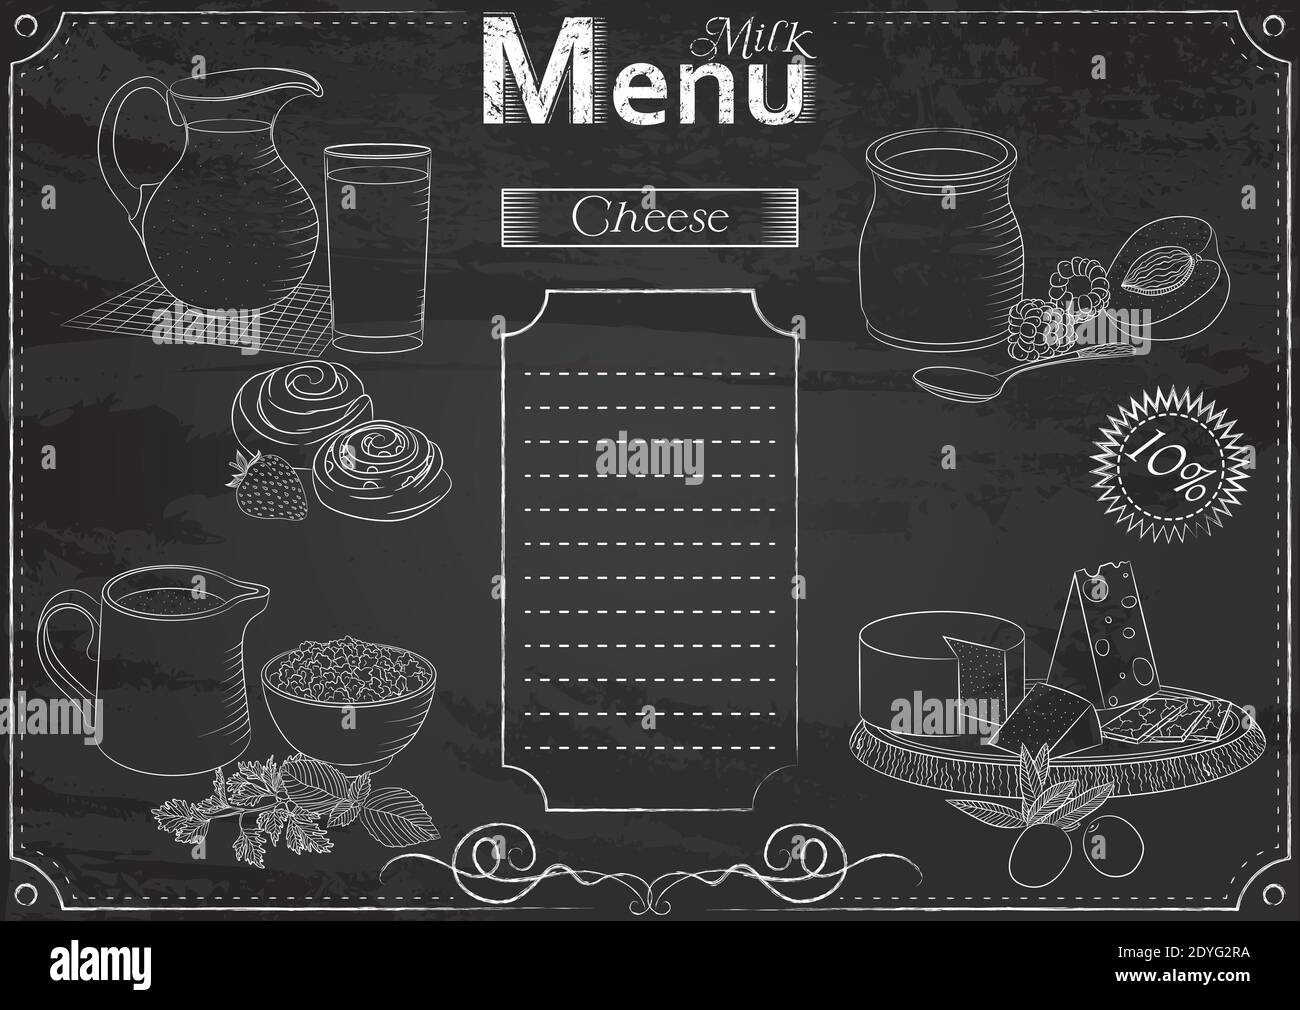 Modèle vectoriel avec éléments de nourritures de lait pour le menu stylisé comme dessin de craie sur tableau de chalkboard.Design pour un restaurant, un café ou un bar Illustration de Vecteur